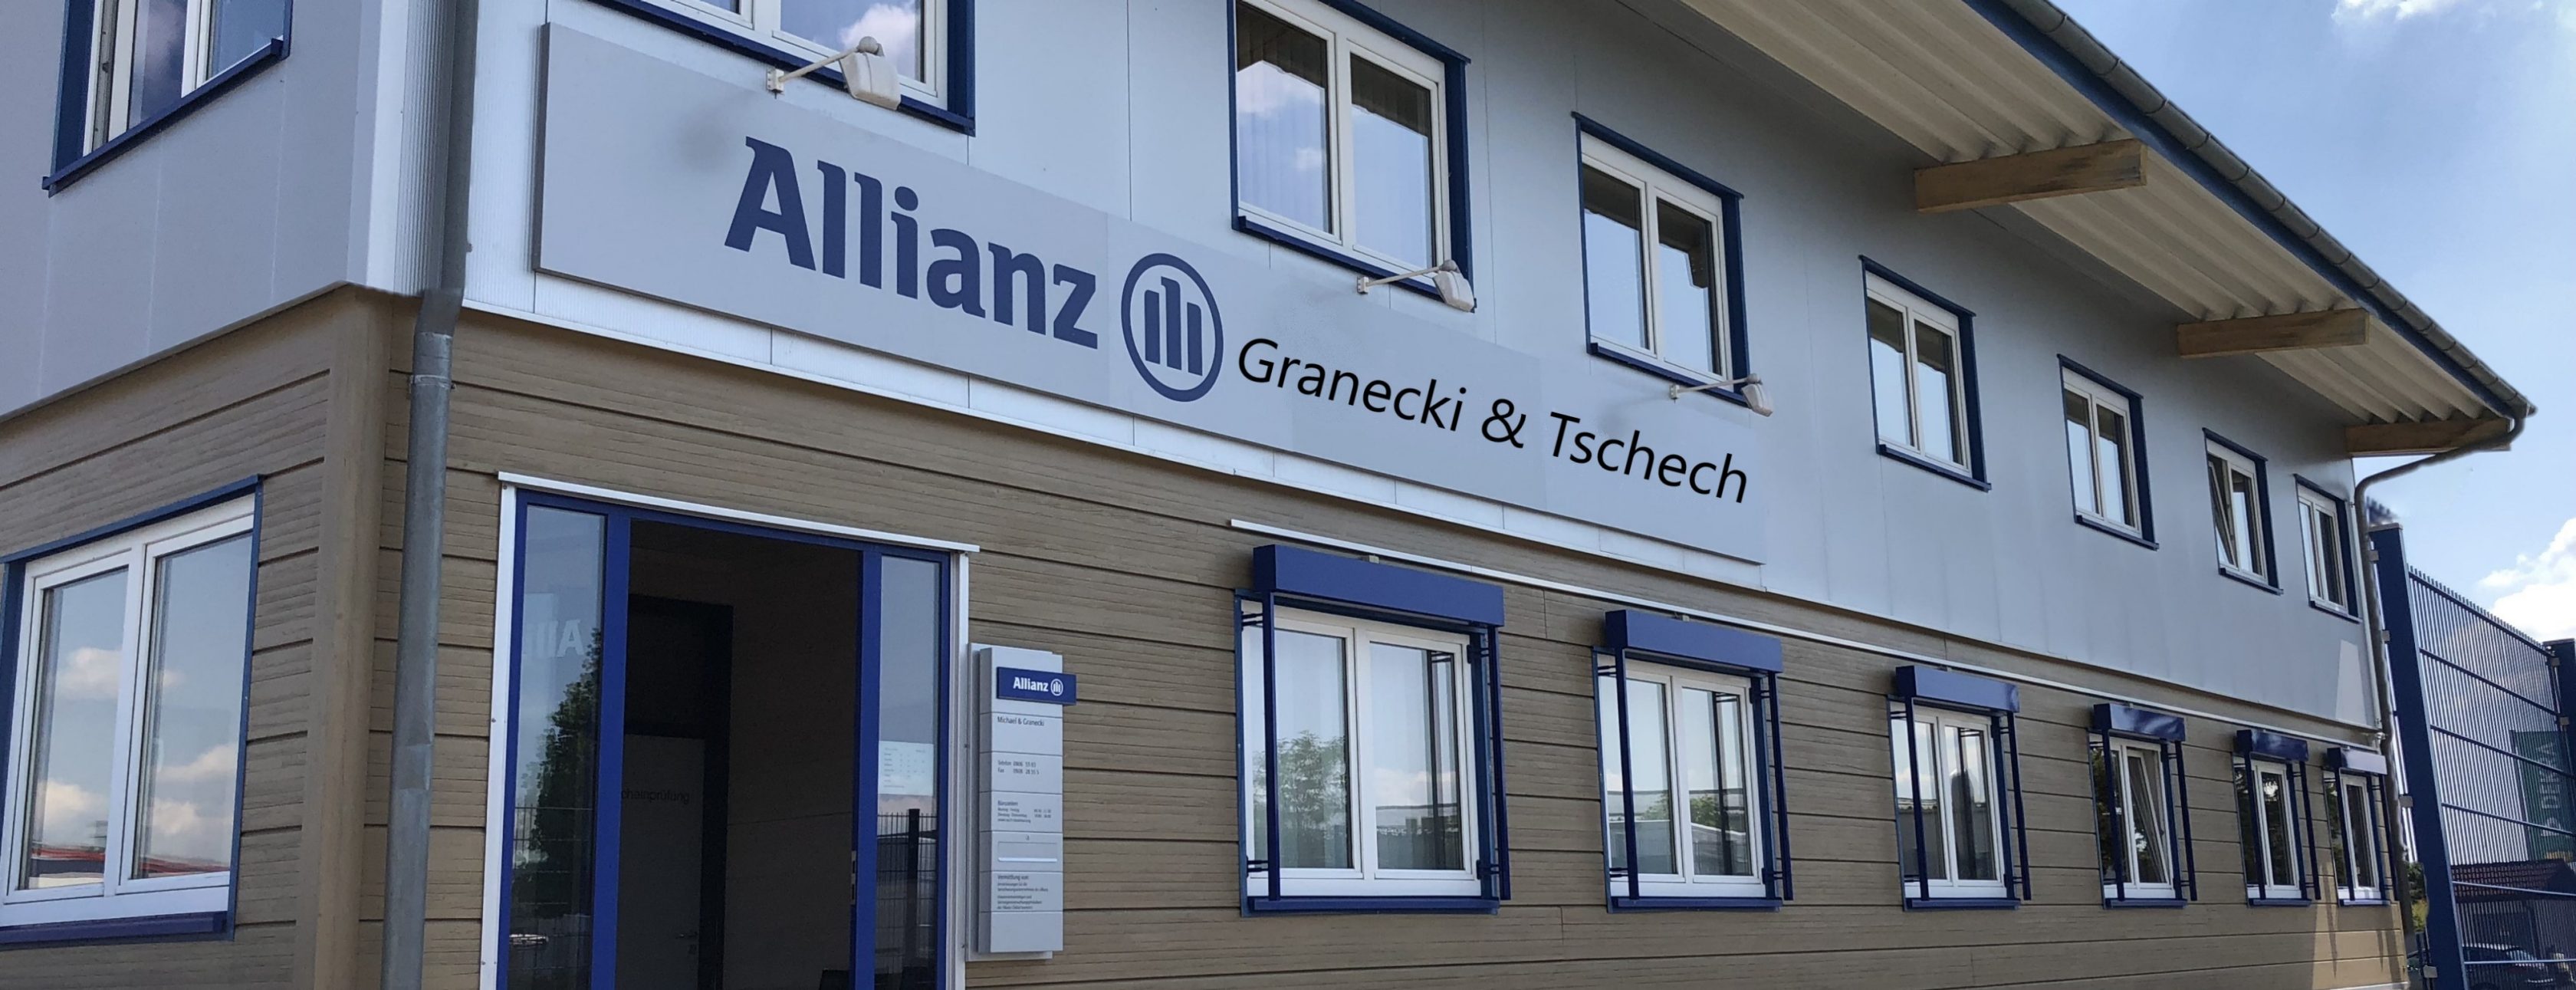 Allianz Versicherung Granecki und Tschech Donauwörth - Titelbild